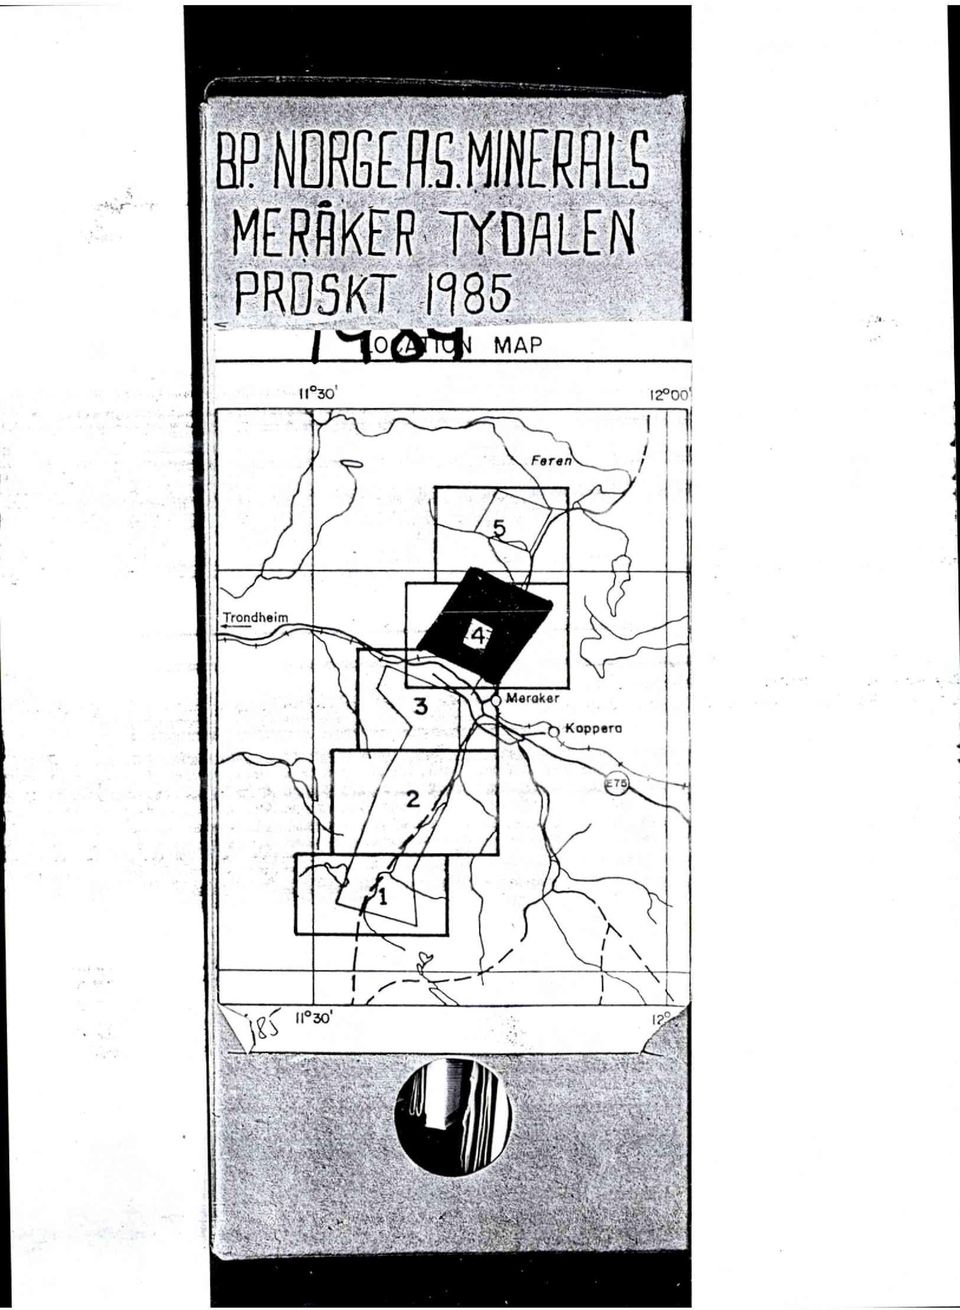 PRDSKT1985 MAP 11030